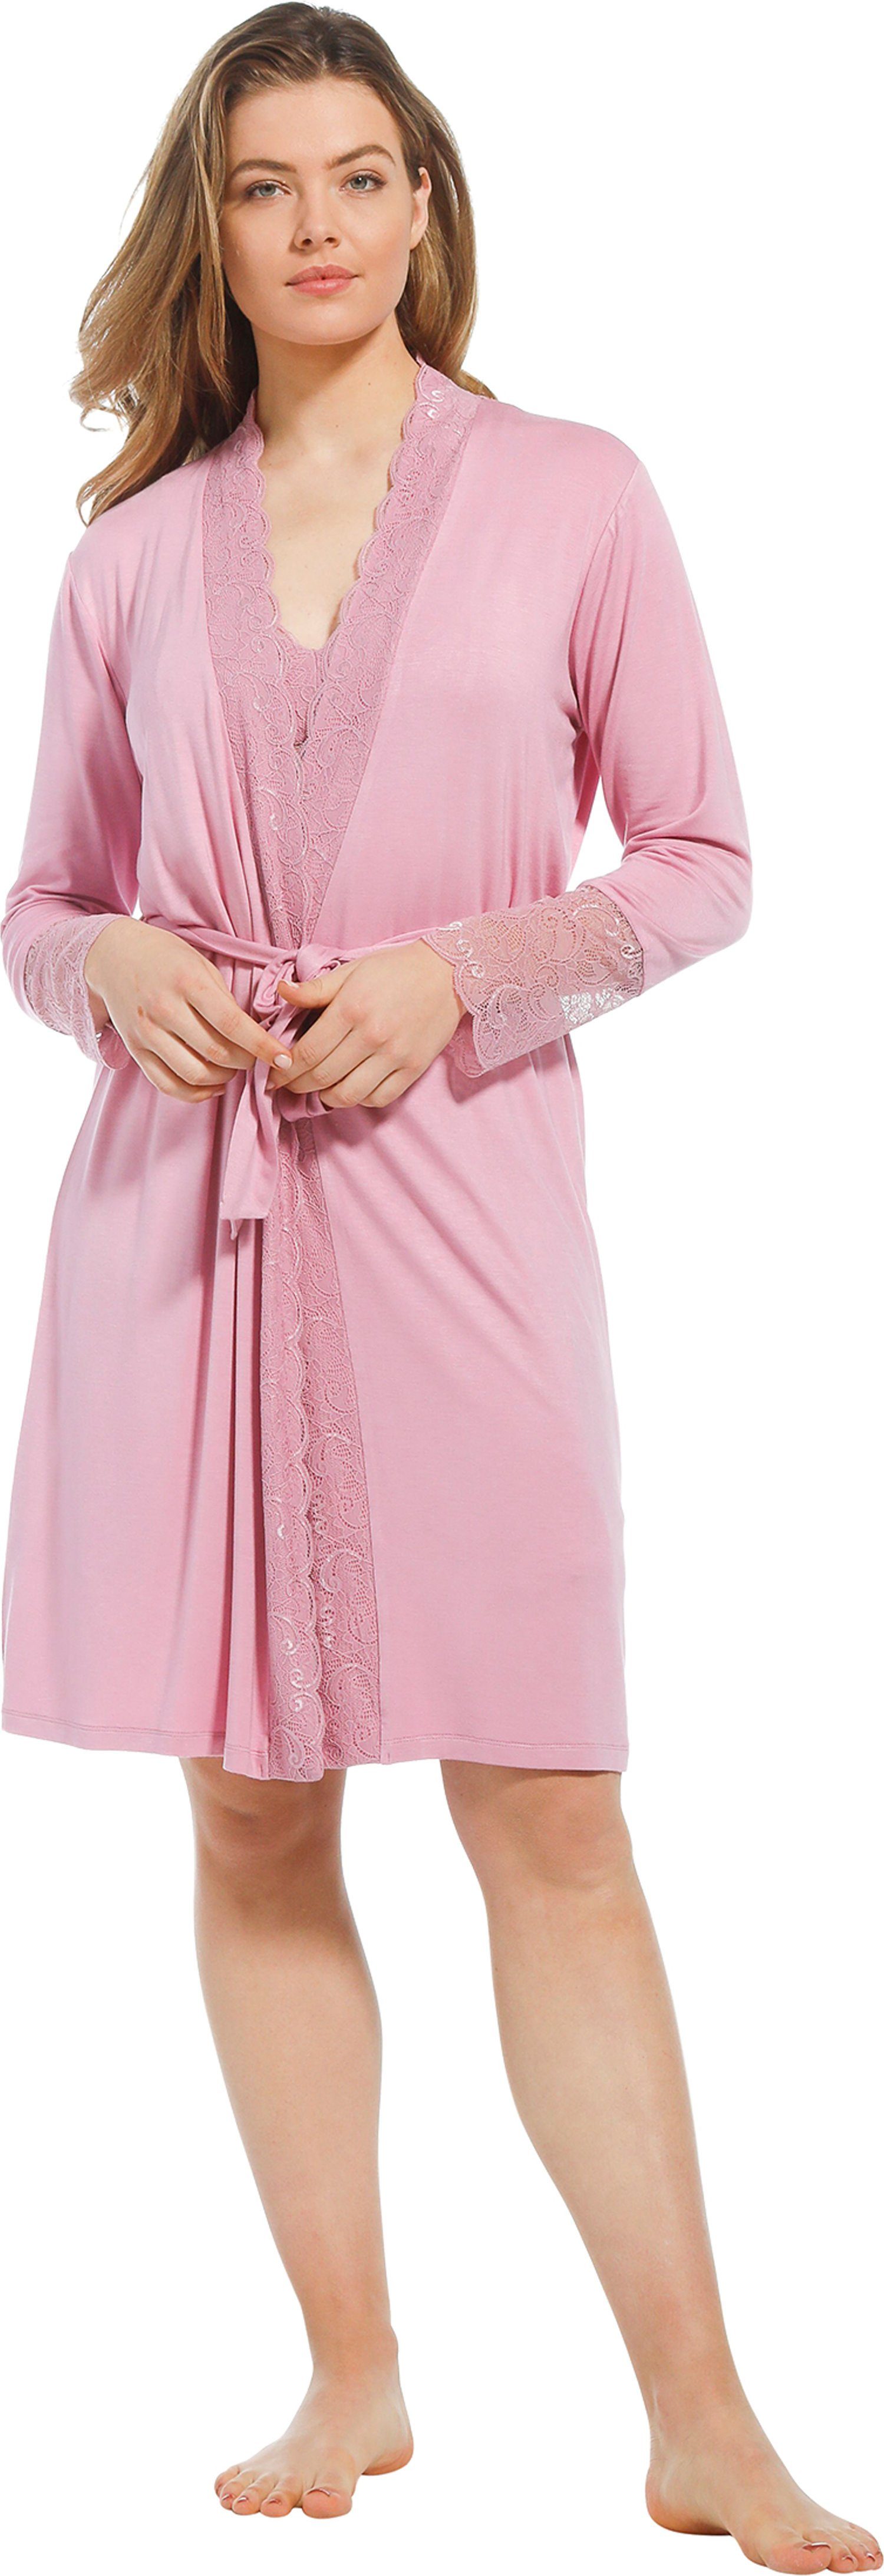 schön Pastunette Kimono Damen Morgenmantel mit Viskosemischung, Kimono-Kragen, pink Spitze, kurz, light Edles Design Gürtel